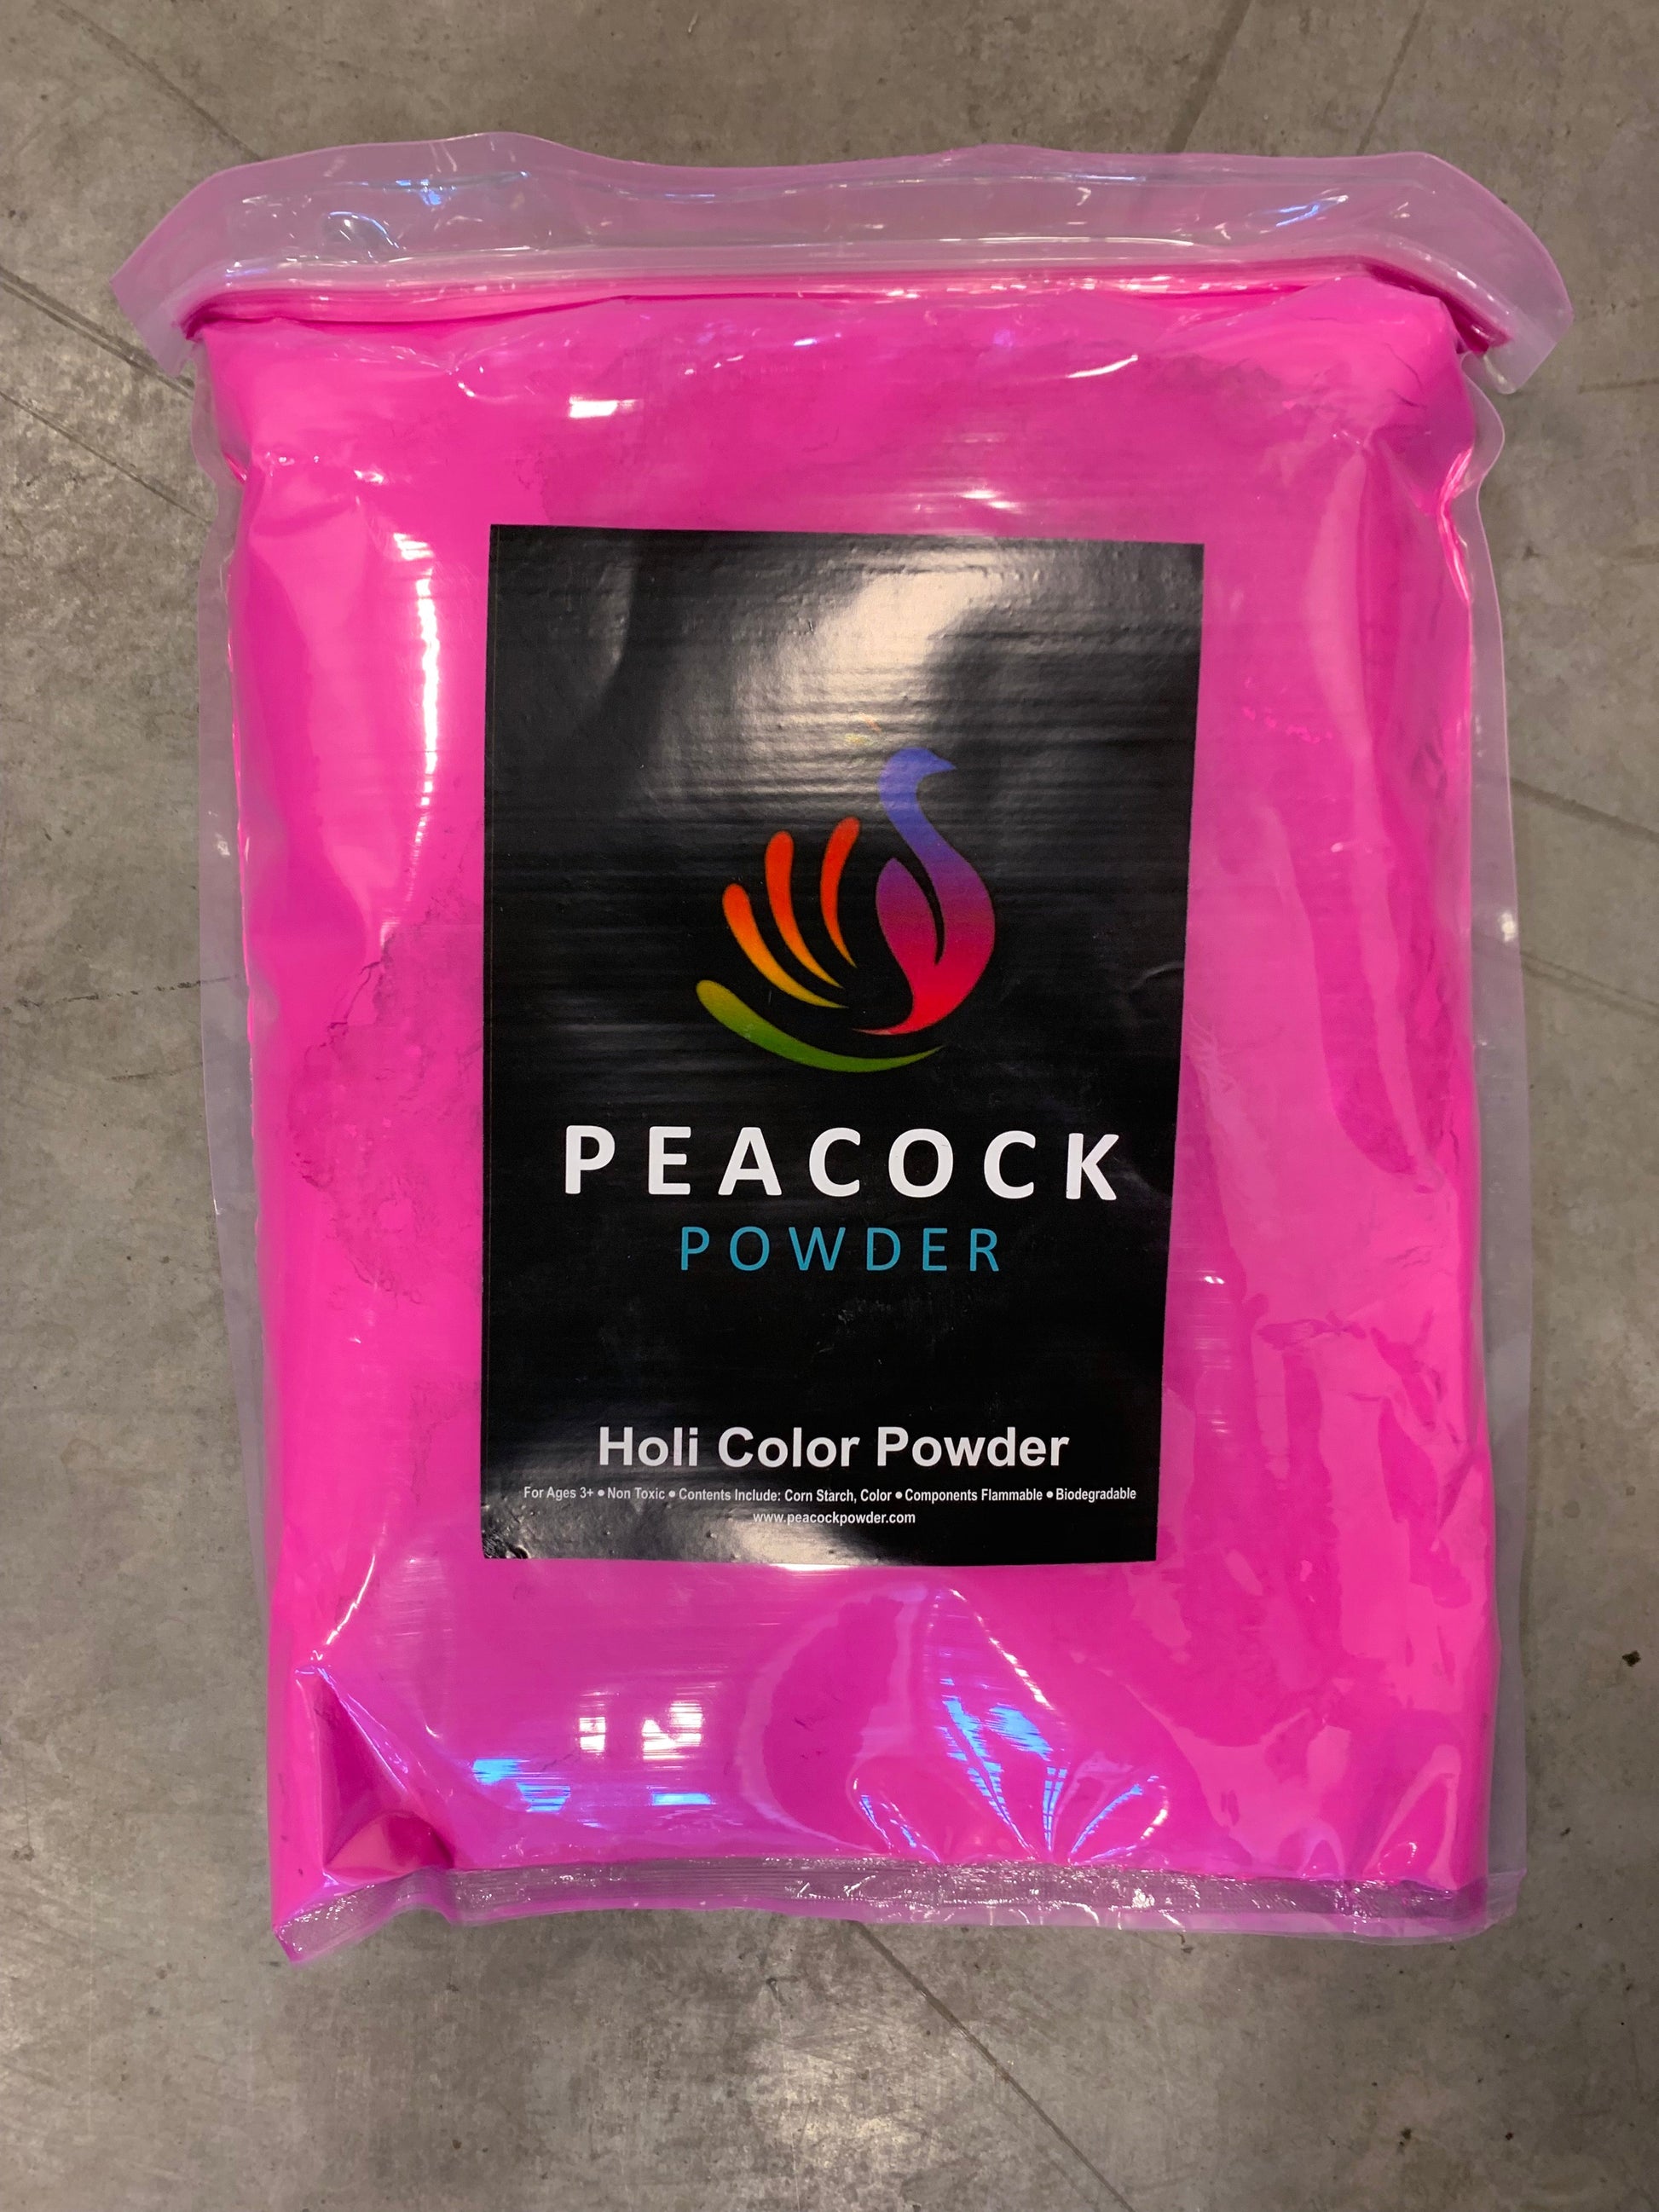 Color Powder  25 lb Pre-Packaged - PurColour